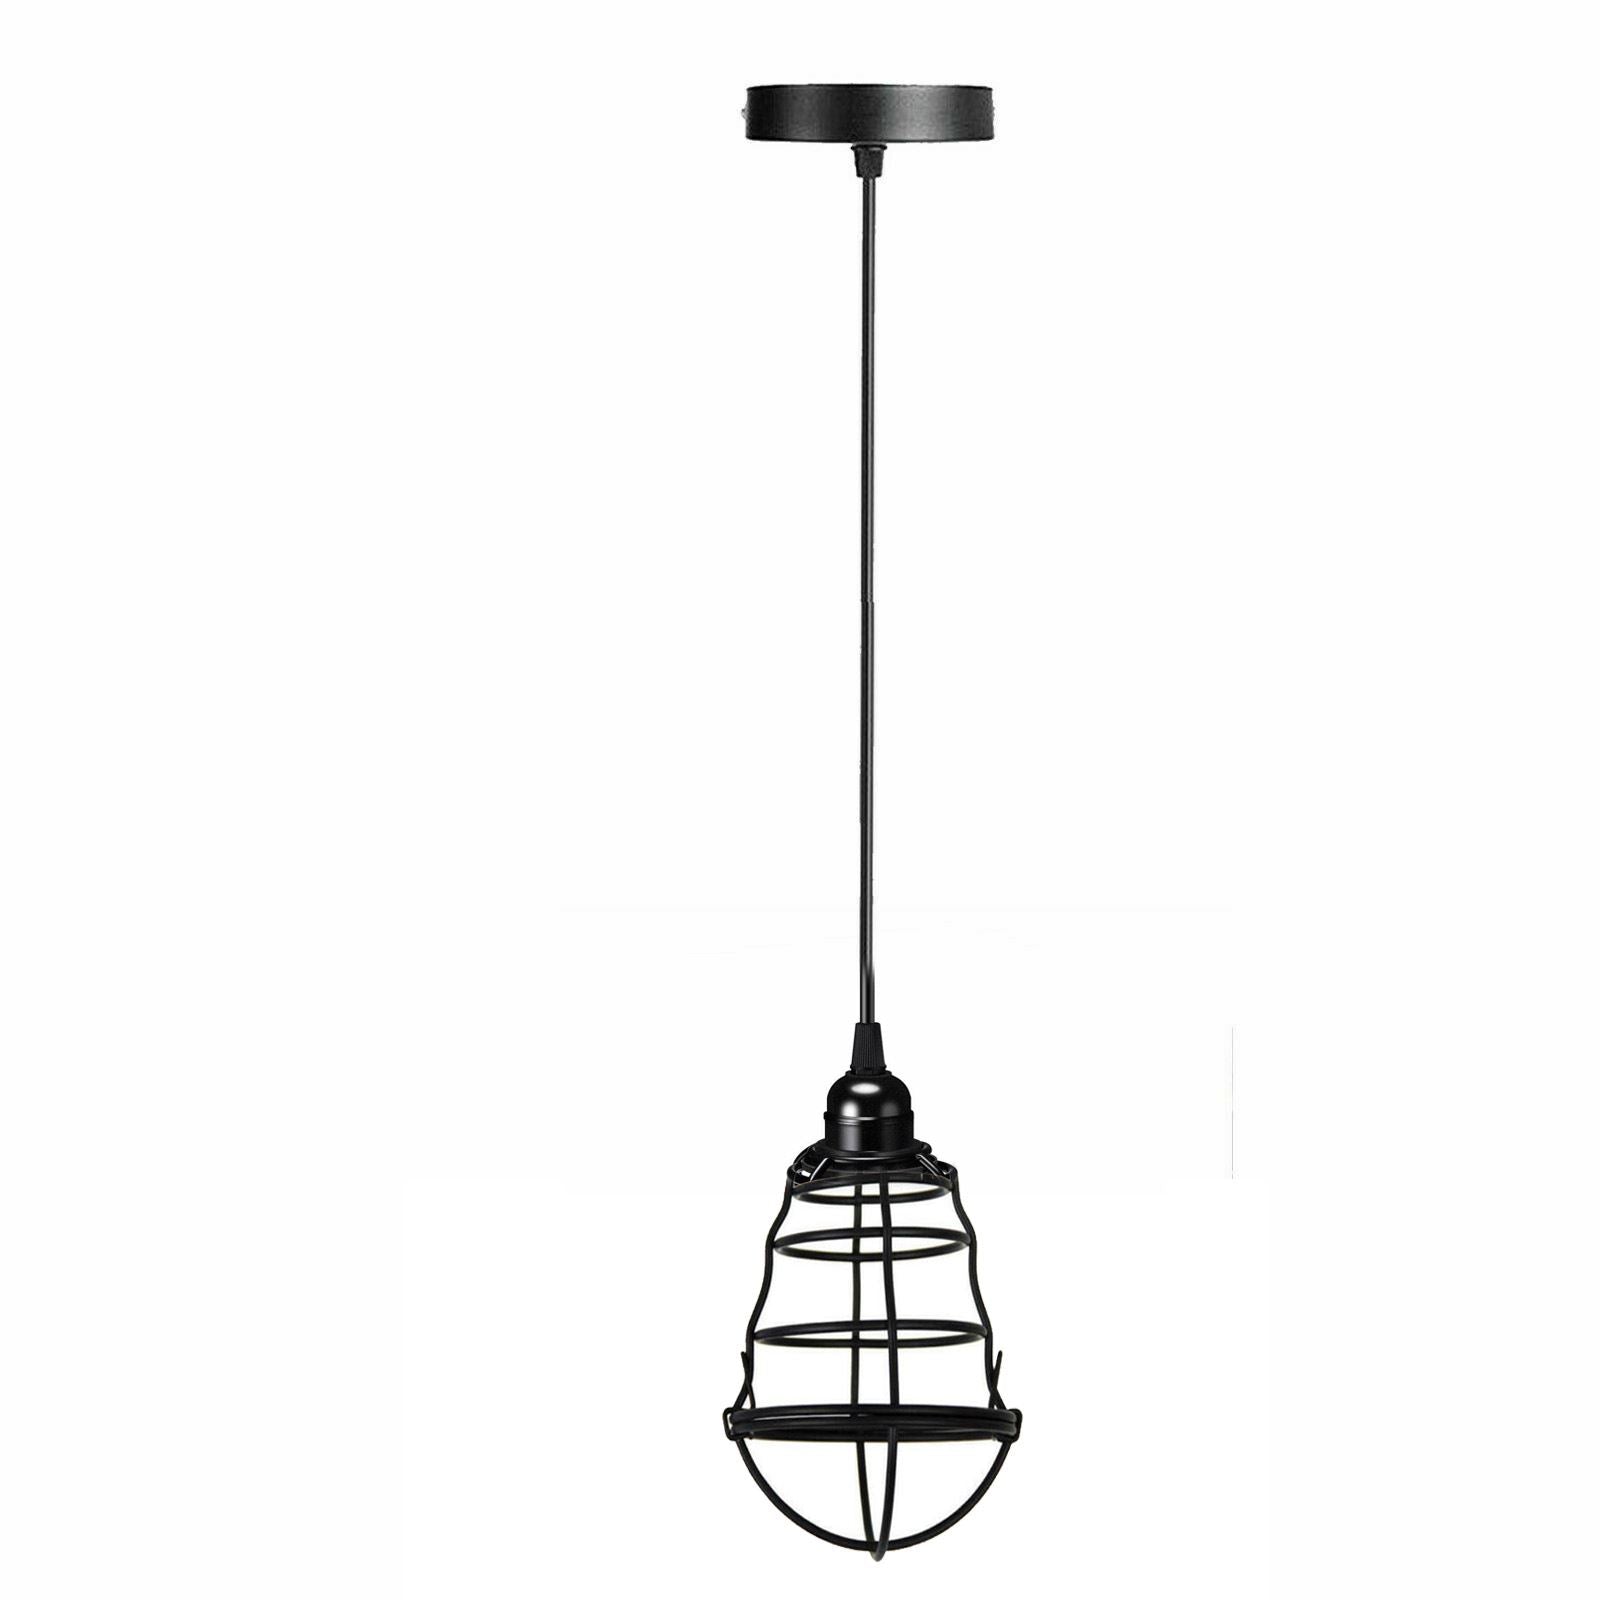 Vintage Modern Black Hanging Pendant Light Ceiling Lamp With95cm Adjustable Wire For Kitchen, Bedroom, Living room~1360 - LEDSone UK Ltd